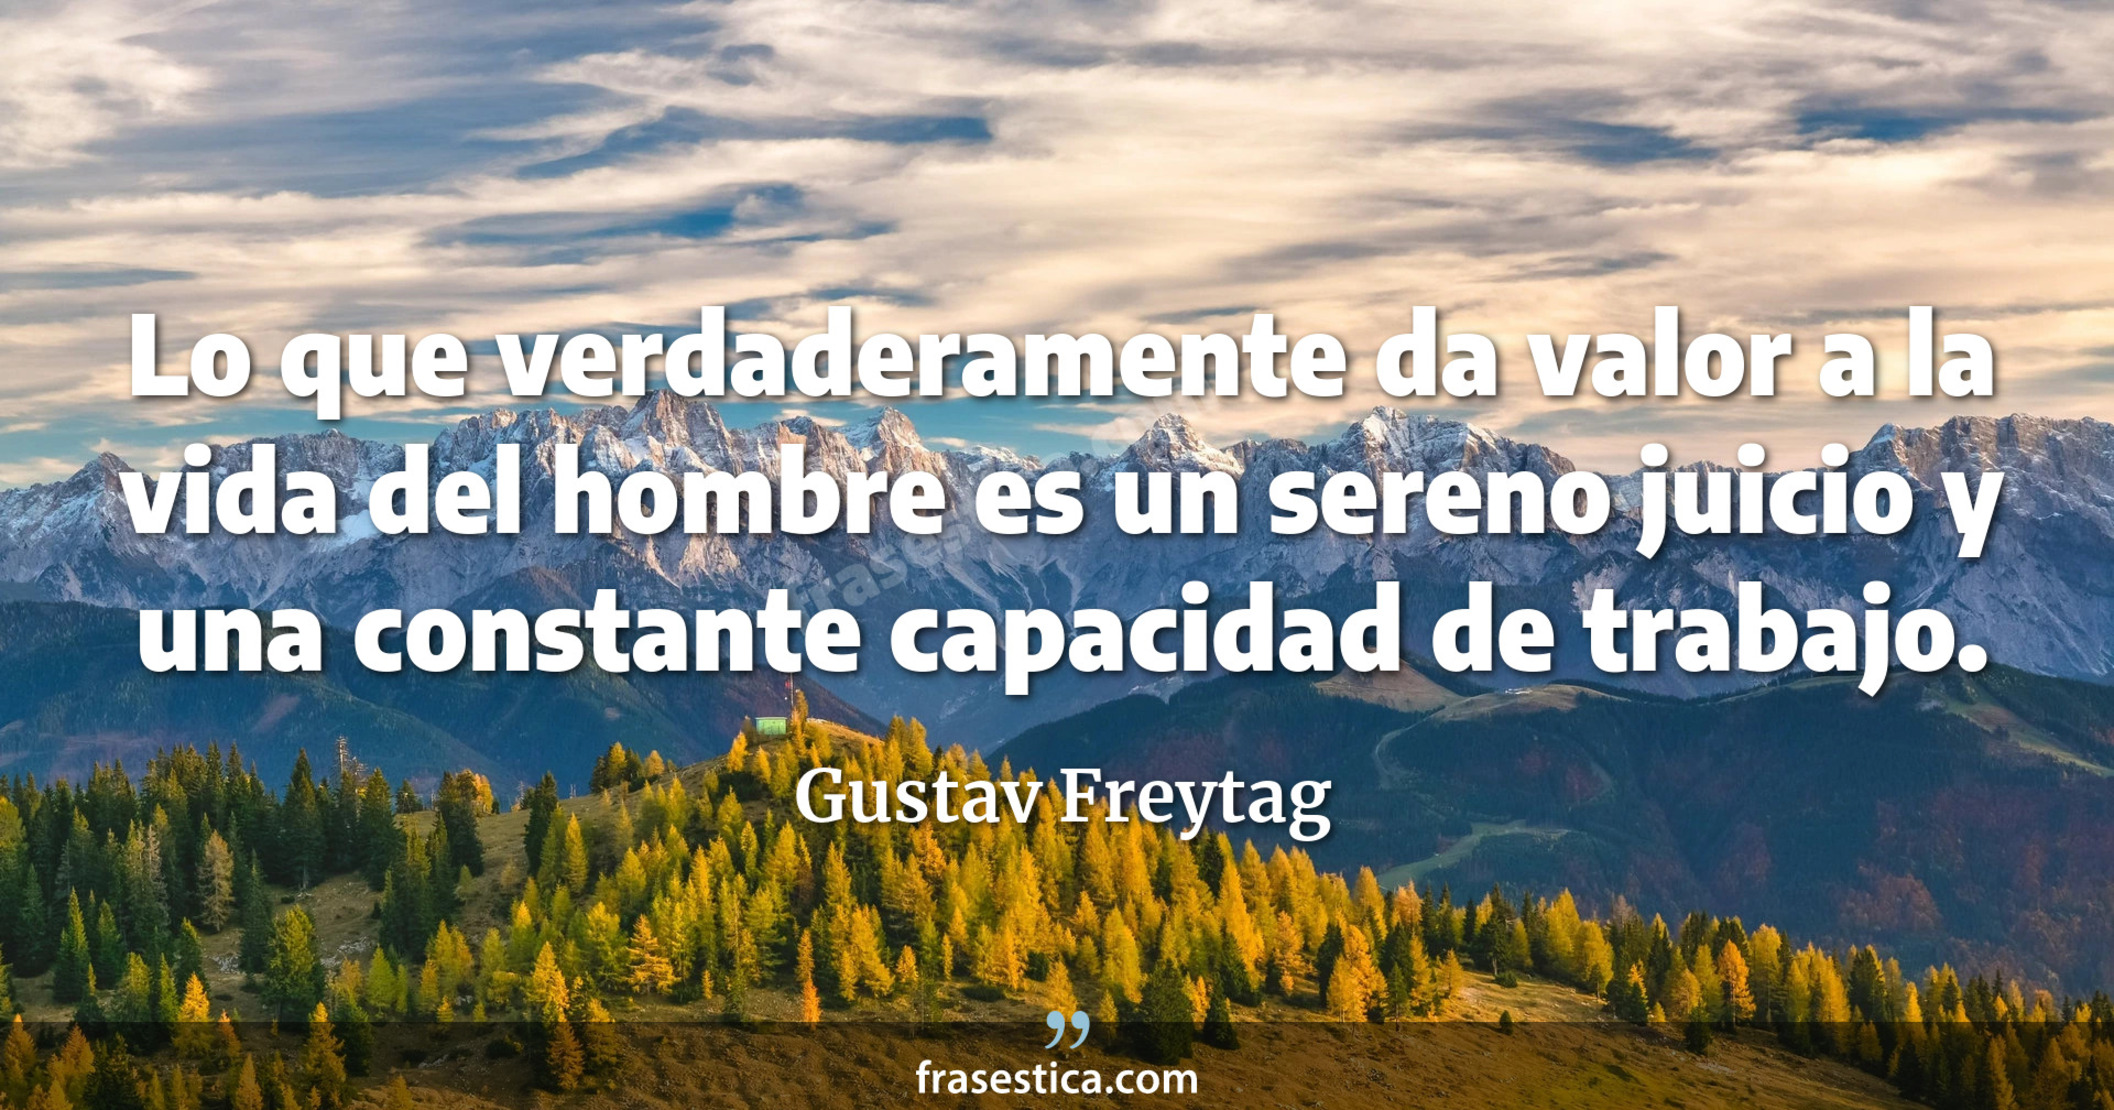 Lo que verdaderamente da valor a la vida del hombre es un sereno juicio y una constante capacidad de trabajo. - Gustav Freytag